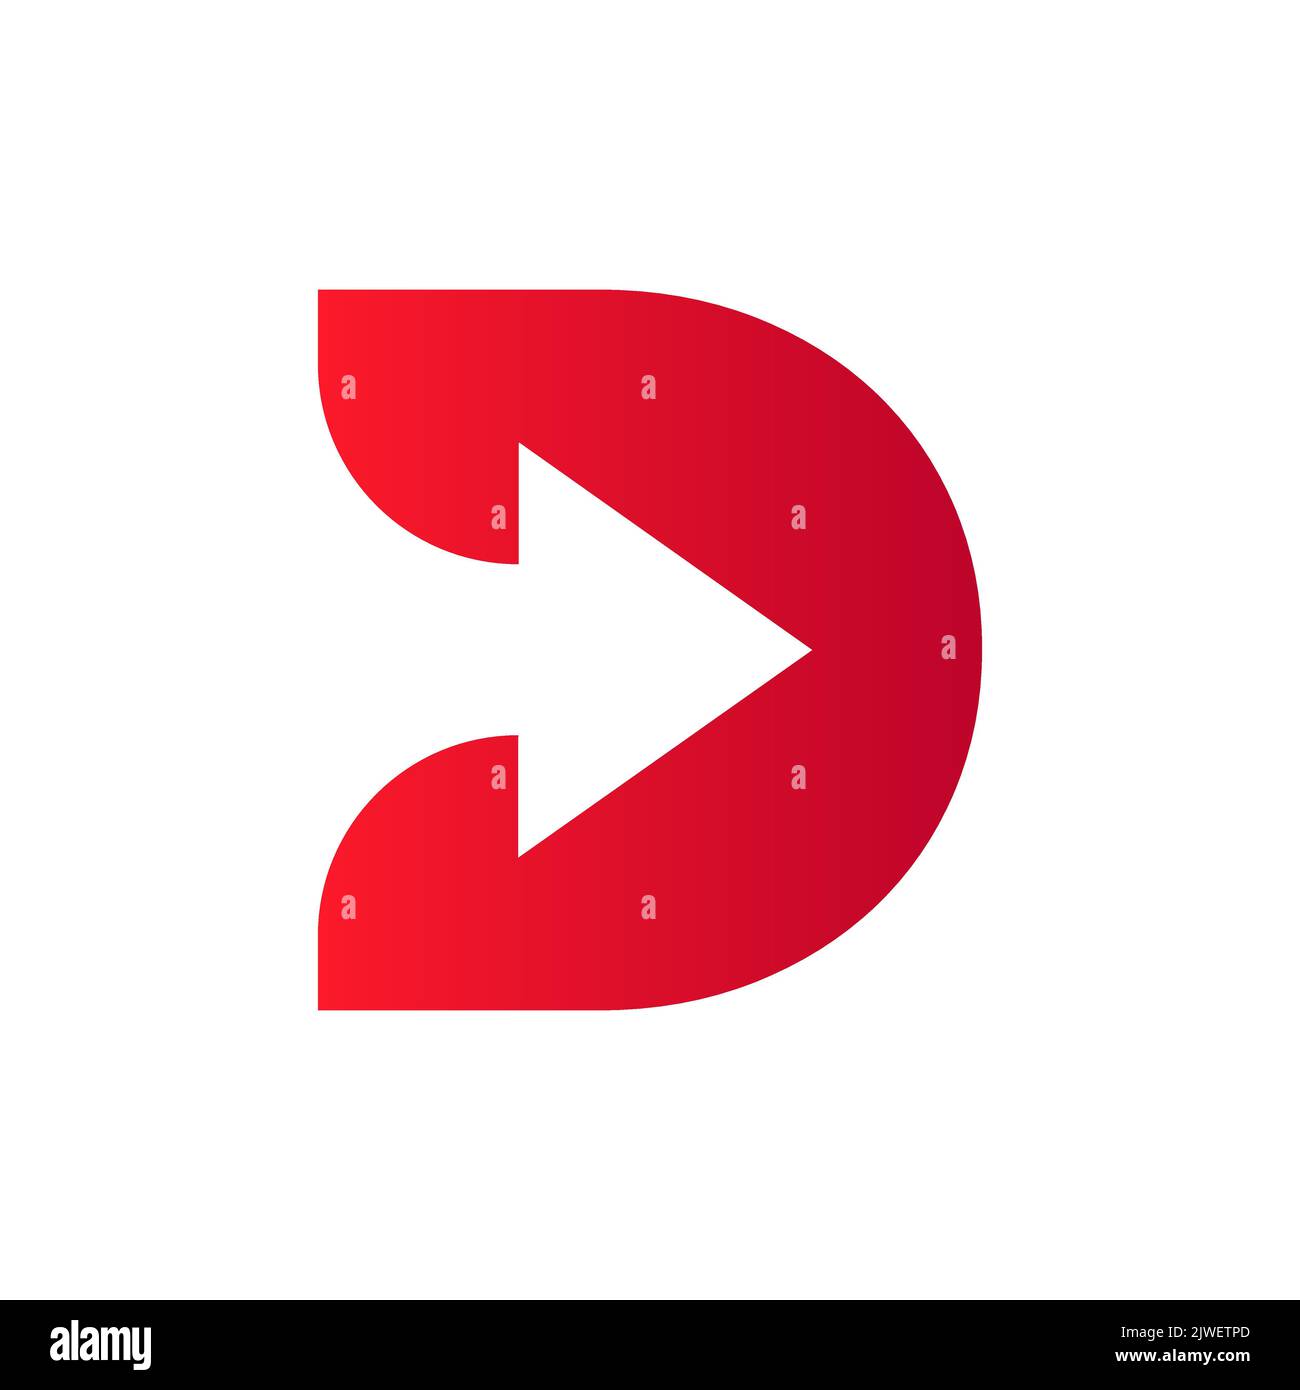 Logo financier lettre D avec flèche de croissance. Elément comptable, modèle de vecteur de symbole d'investissement financier Illustration de Vecteur